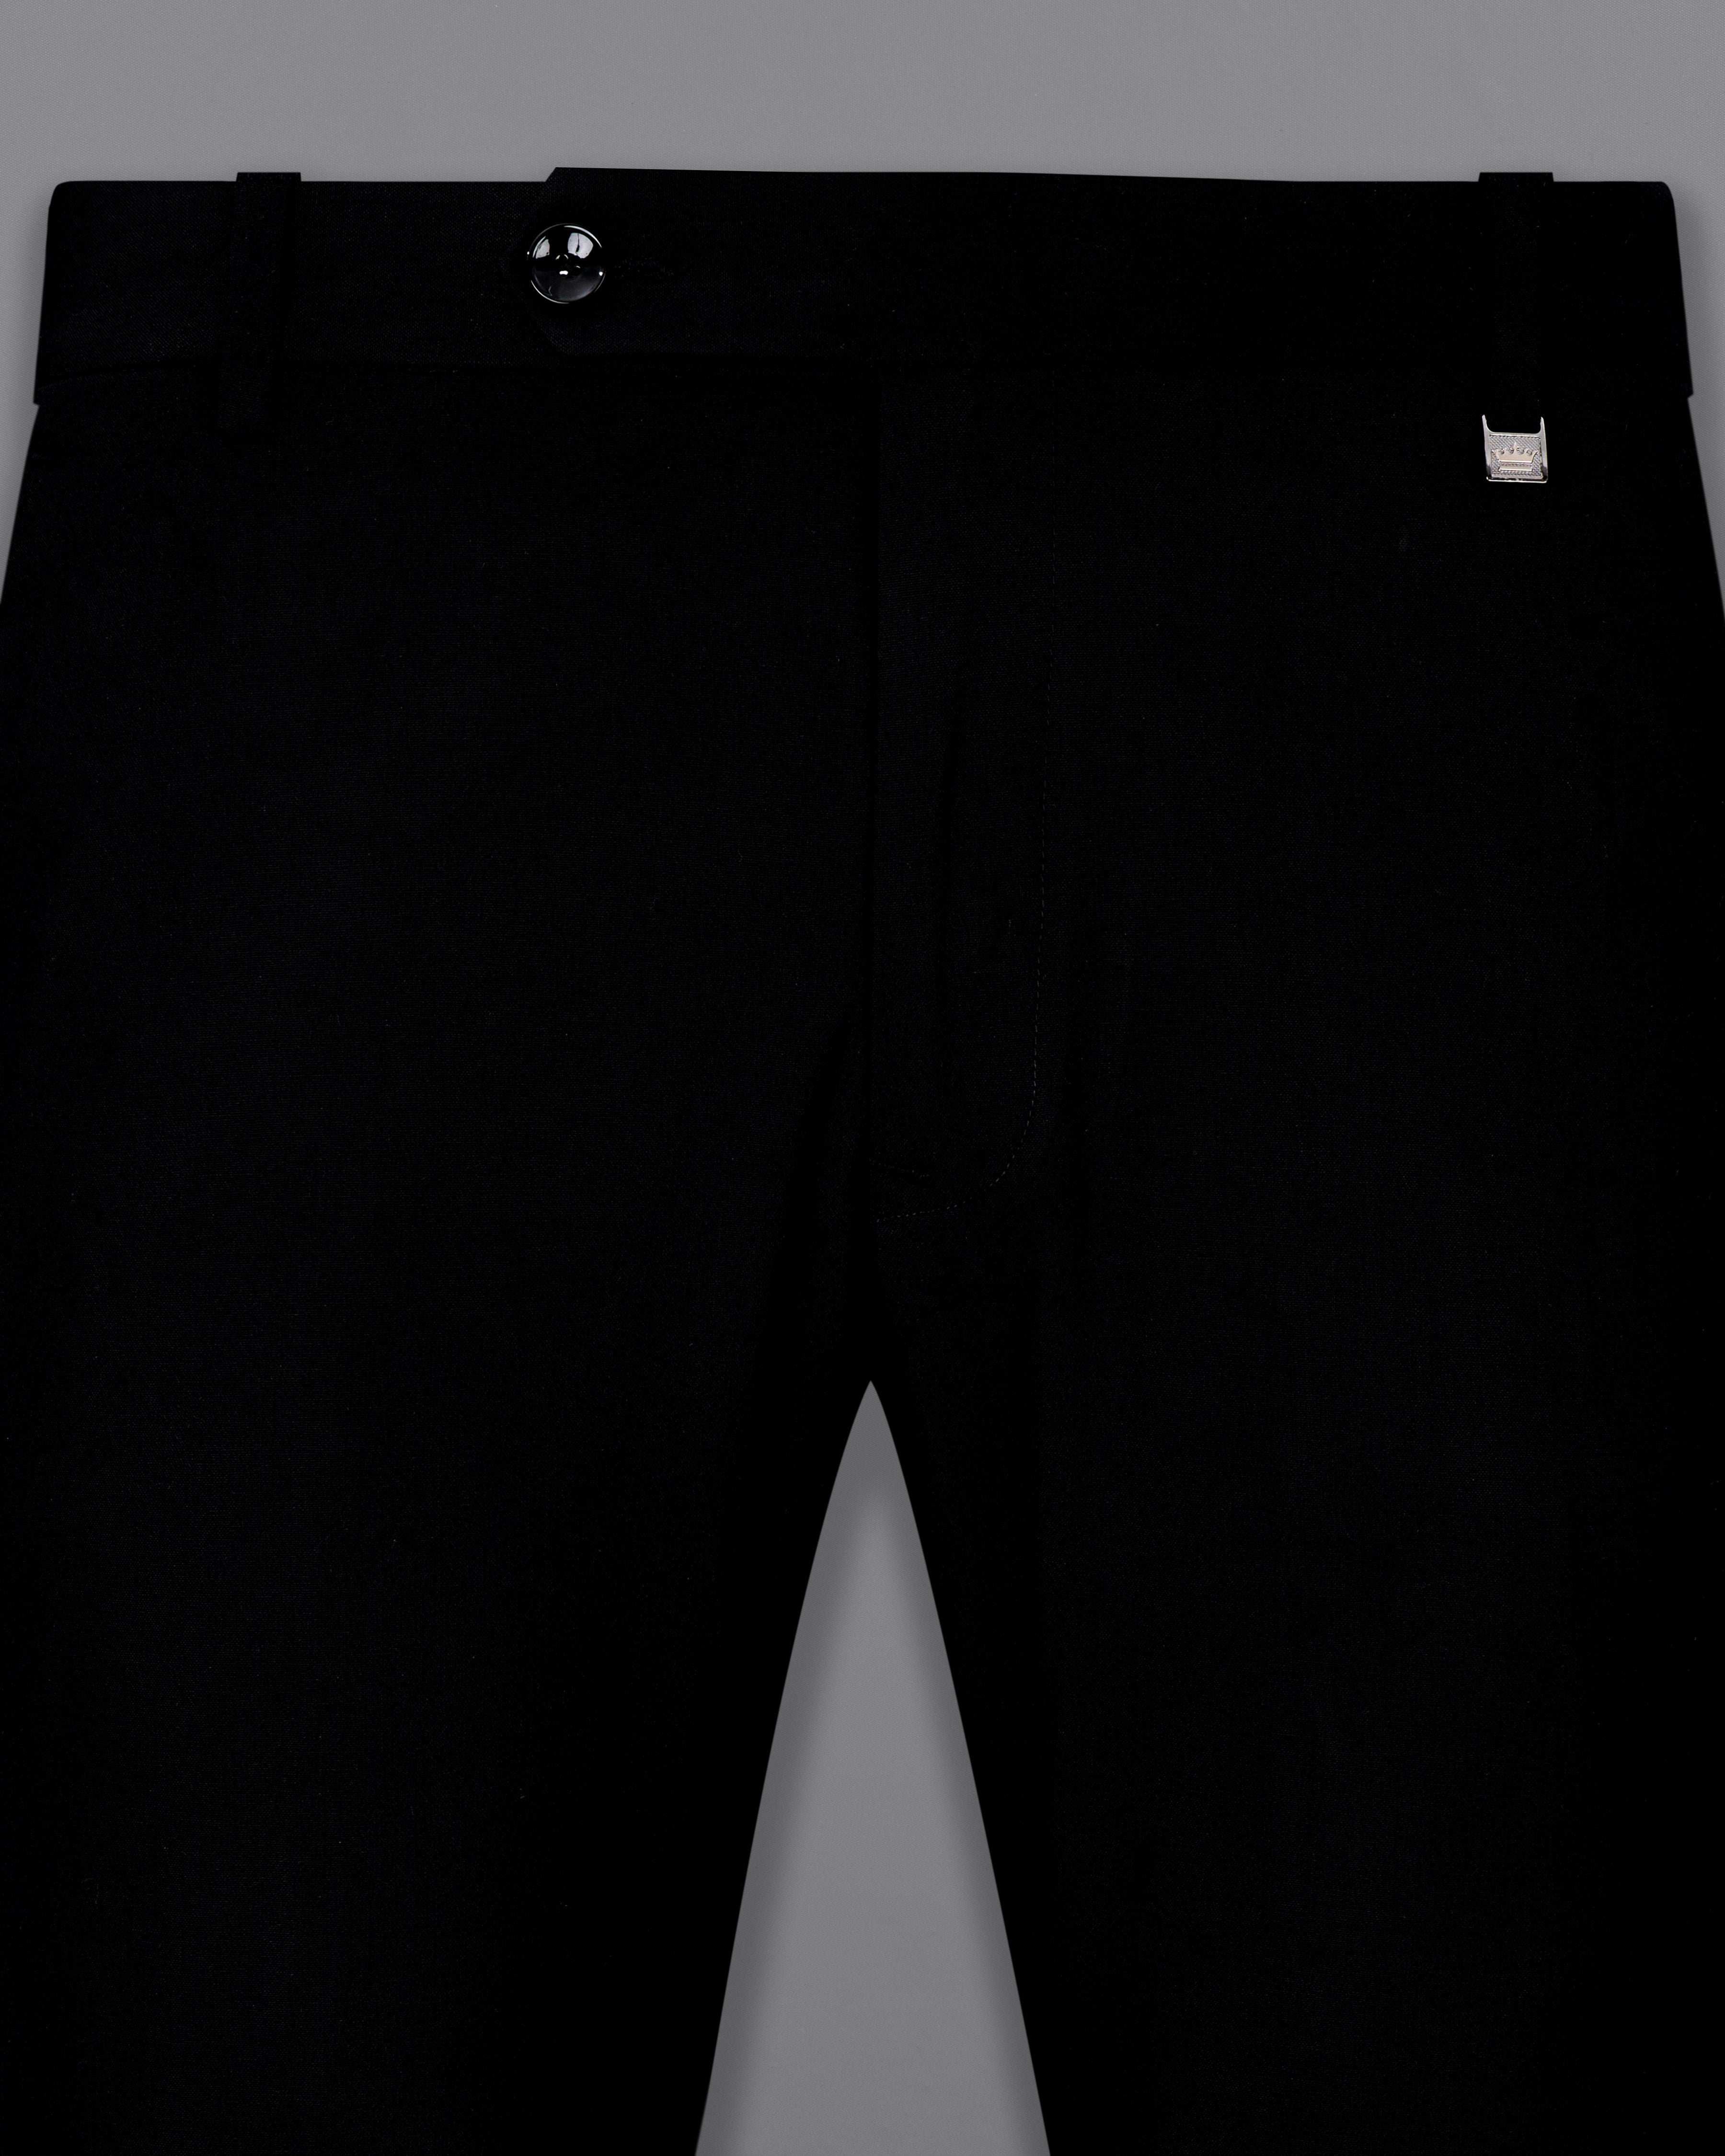 Korean Black (The Best Black We Have) Cross-Buttoned Bandhgala Suit ST2605-CBG-36, ST2605-CBG-38, ST2605-CBG-40, ST2605-CBG-42, ST2605-CBG-44, ST2605-CBG-46, ST2605-CBG-48, ST2605-CBG-50, ST2605-CBG-52, ST2605-CBG-54, ST2605-CBG-56, ST2605-CBG-58, ST2605-CBG-60